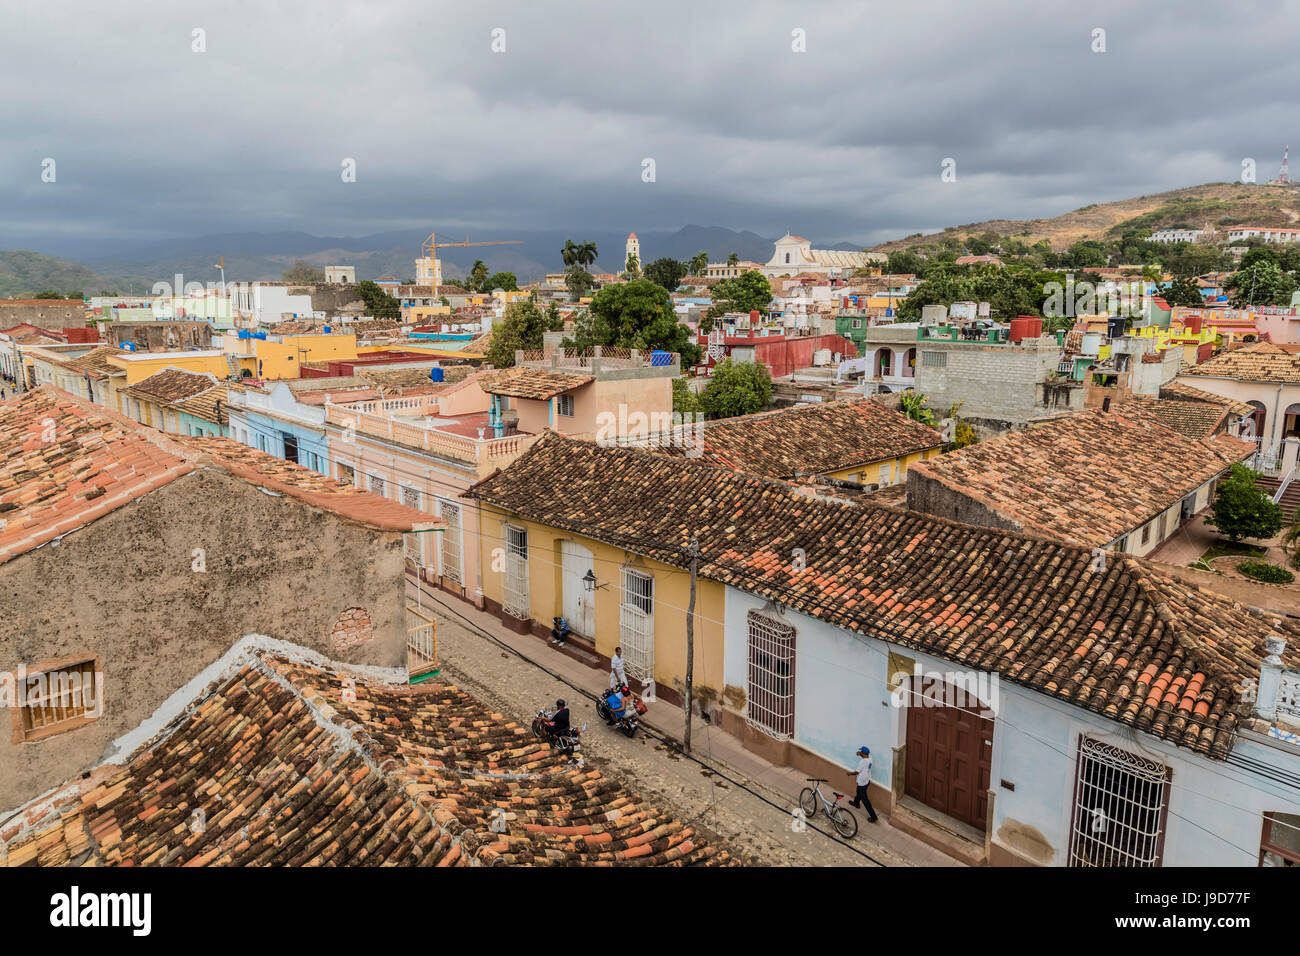 Una vista de la Plaza Mayor, Trinidad, Sitio del Patrimonio Mundial de la UNESCO, Cuba, Las Antillas, el Caribe, América Central Foto de stock